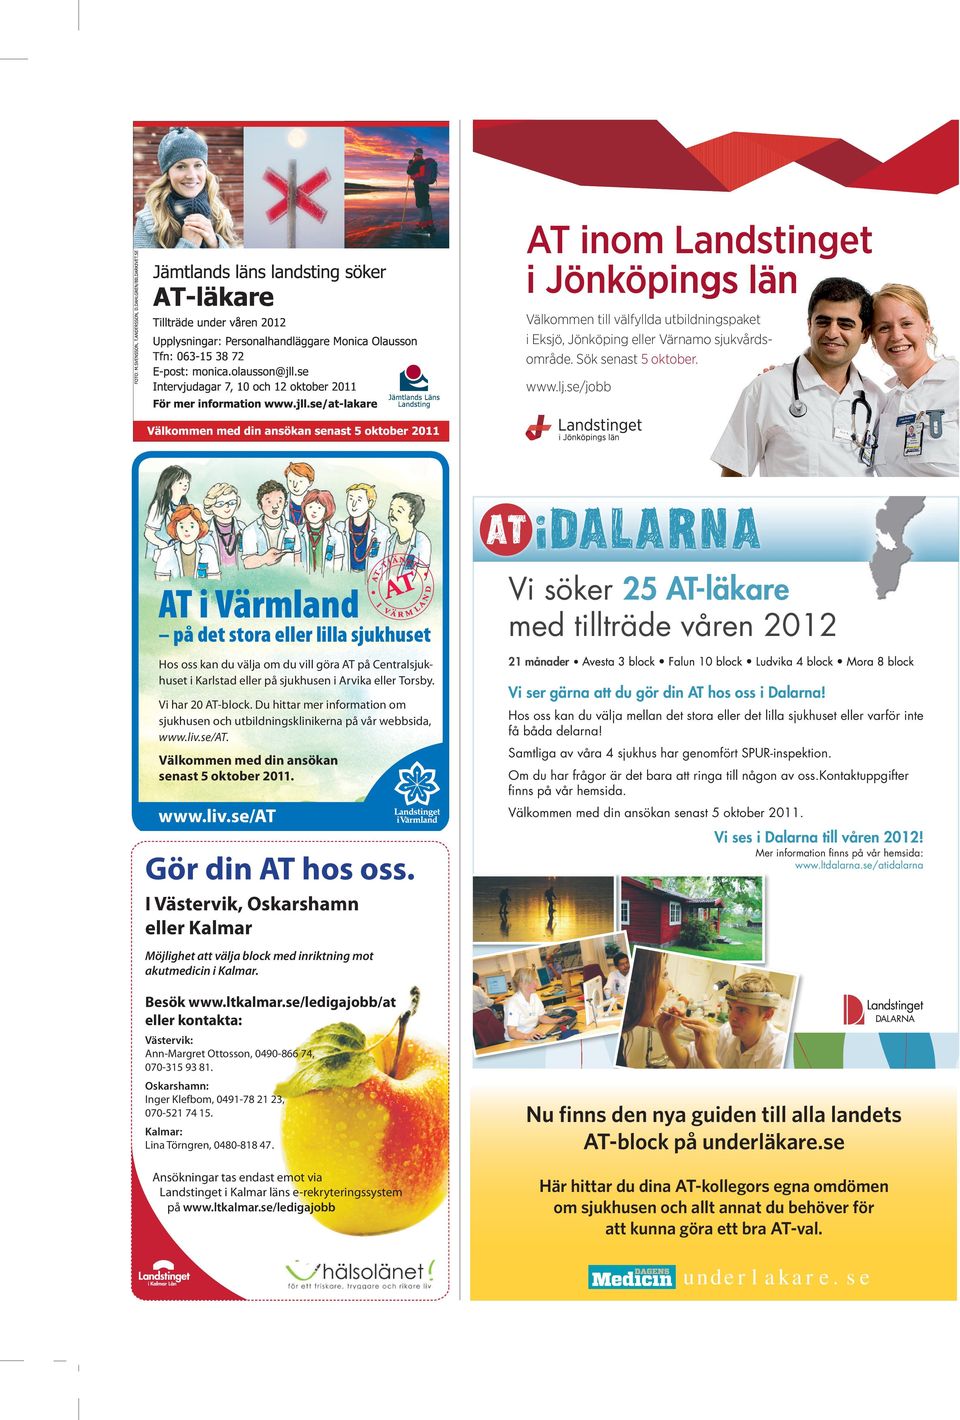 Du hittar mer information om sjukhusen och utbildningsklinikerna på vår webbsida, www.liv.